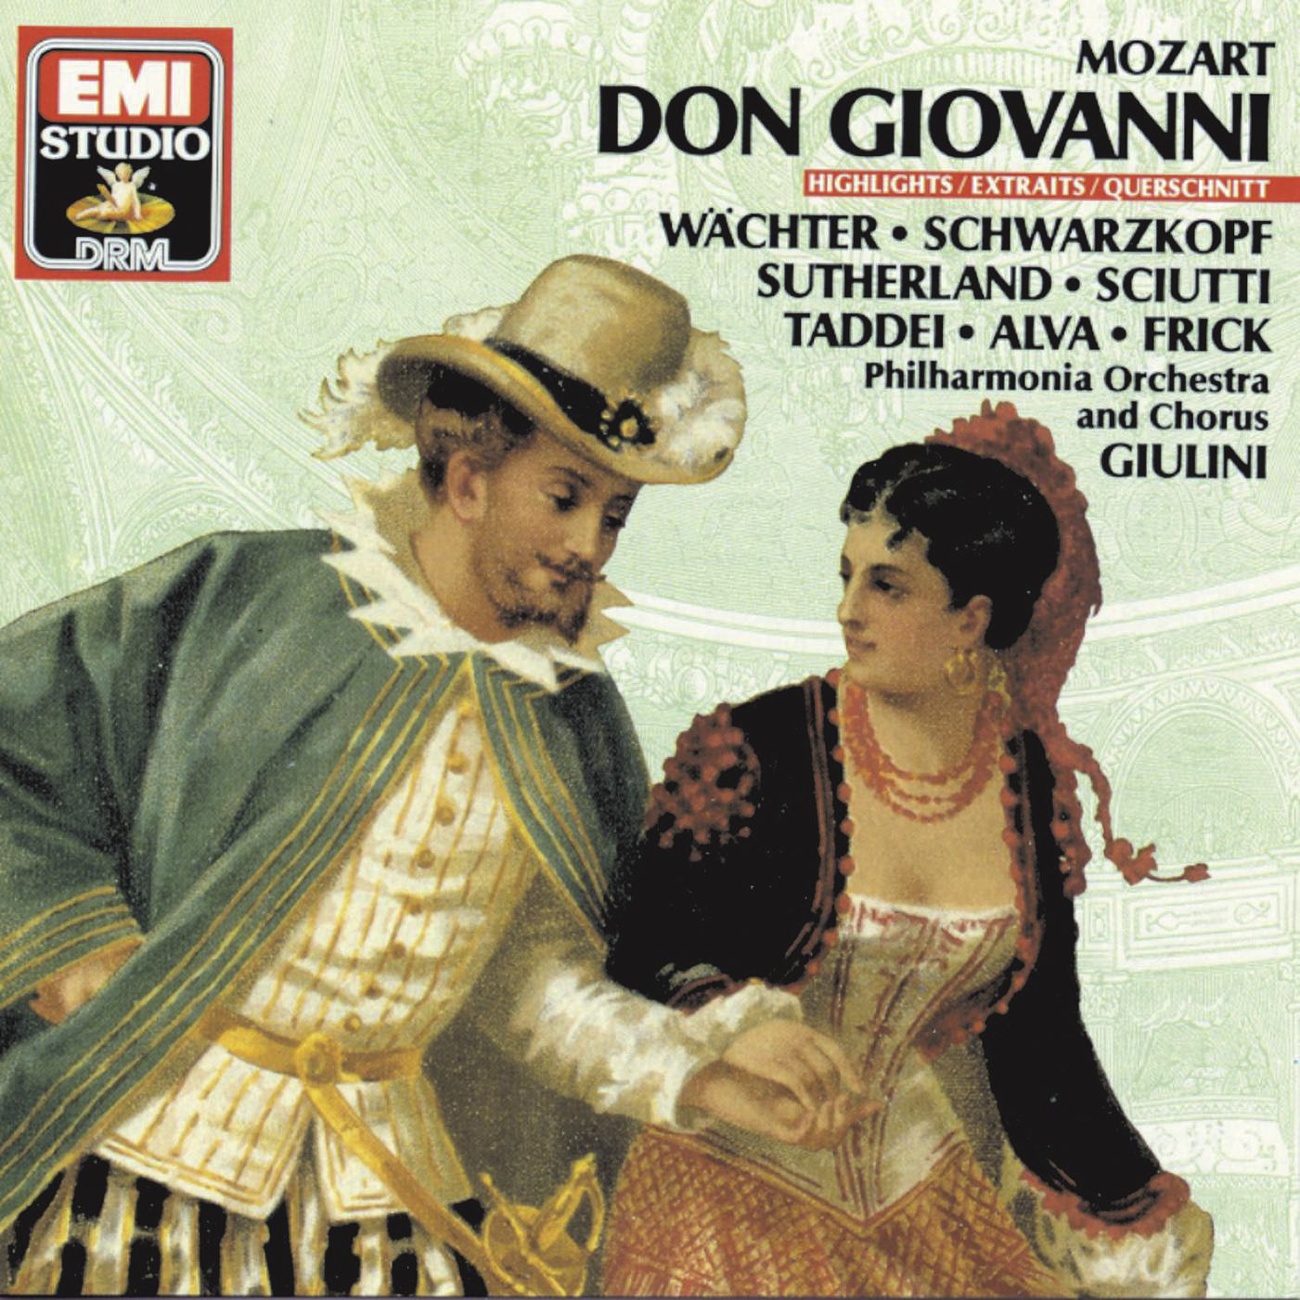 Don Giovanni (1987 Digital Remaster), Act 1: Don Ottavio, son morta ... Or sai chi l'onore (Donna Anna, Don Ottavio)